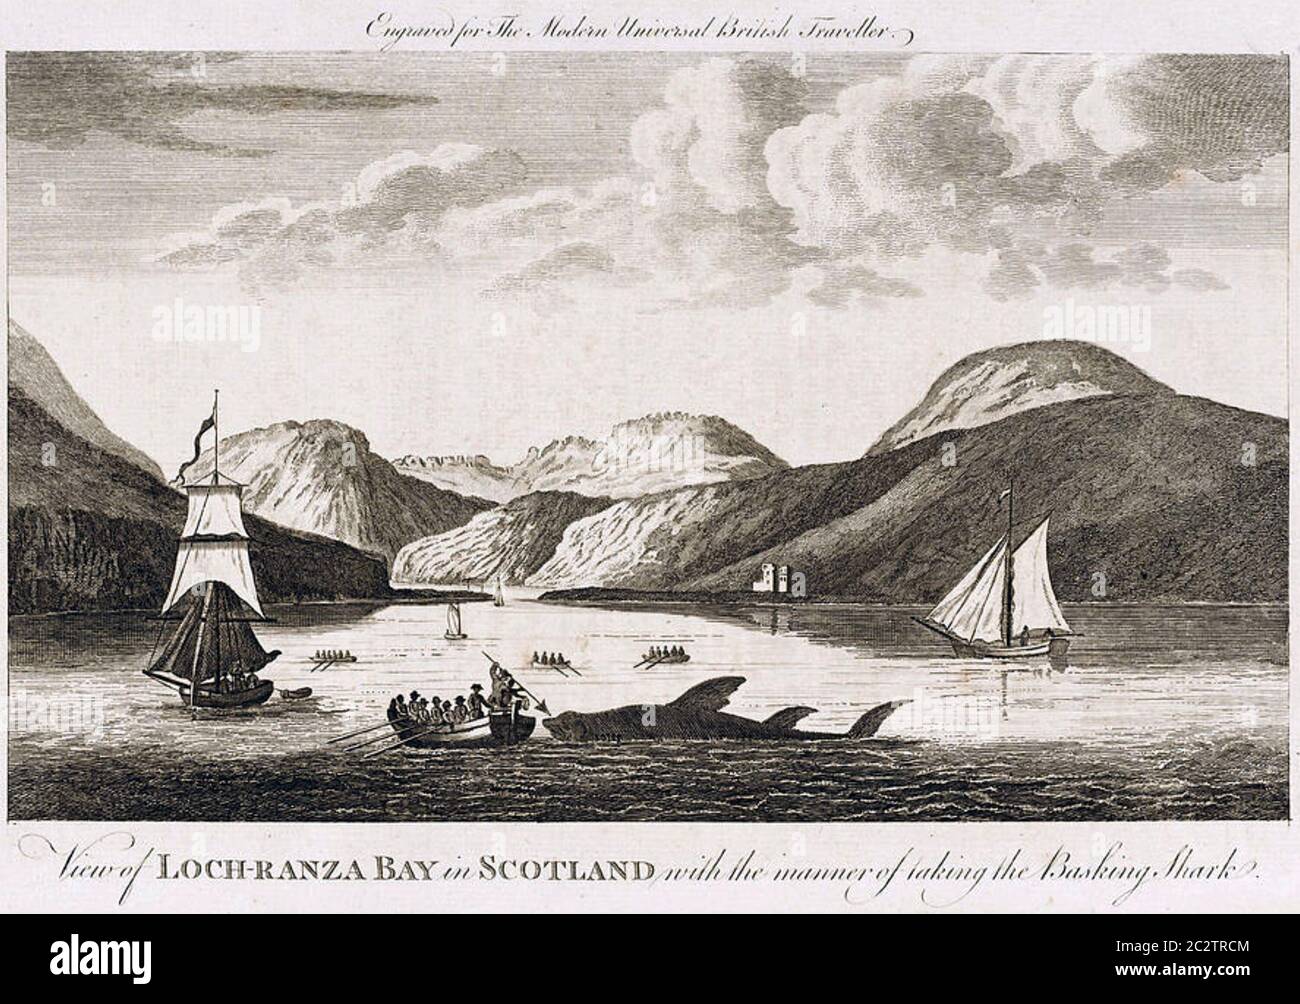 WALHAIE VOR Lochranza, Isle mof Arran, Schottland, im 18. Jahrhundert Stockfoto